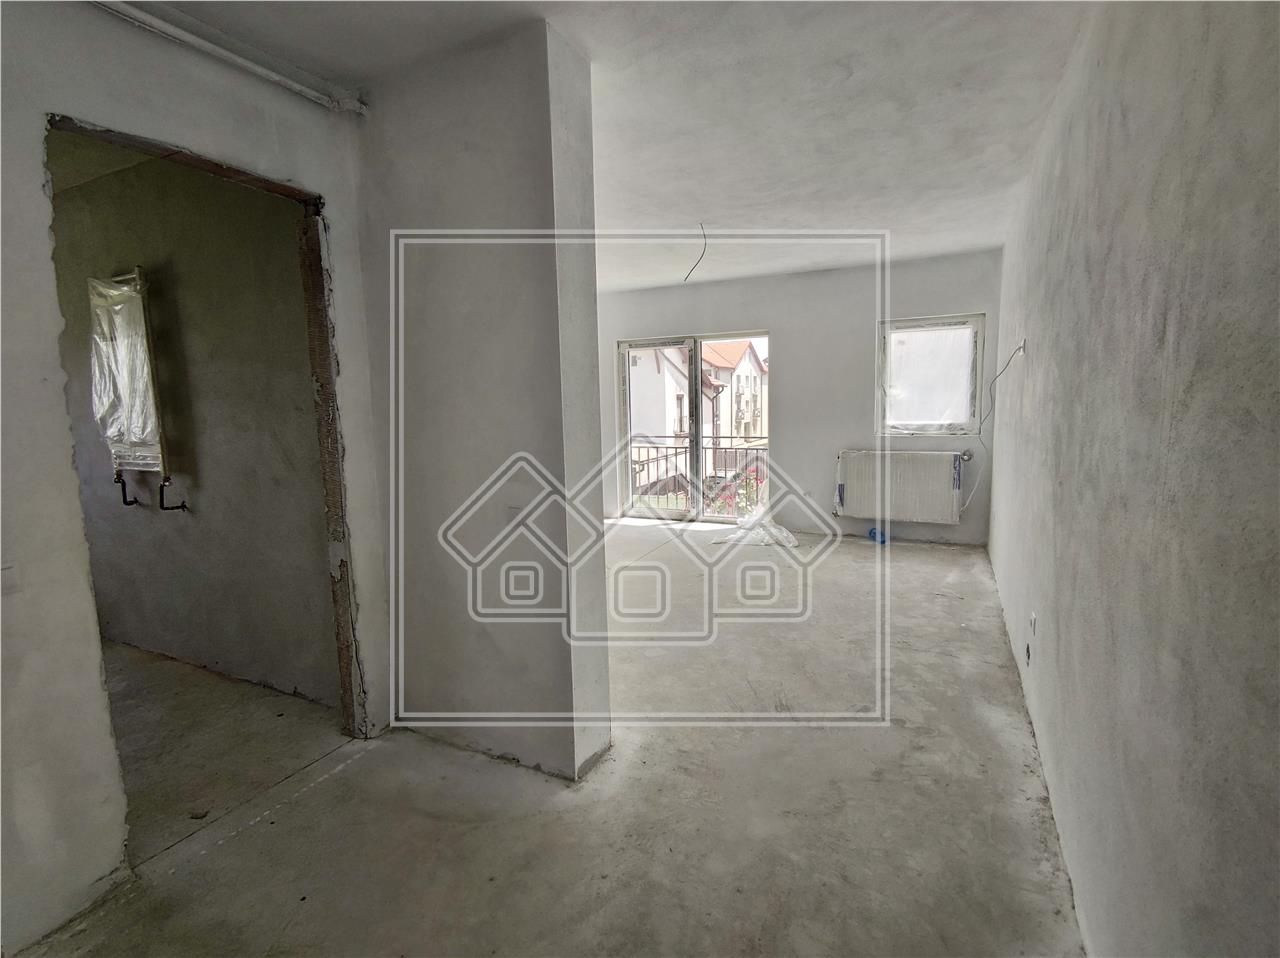 Apartament de vanzare in Sibiu - 3 camere - INTABULAT- Arhitectilor